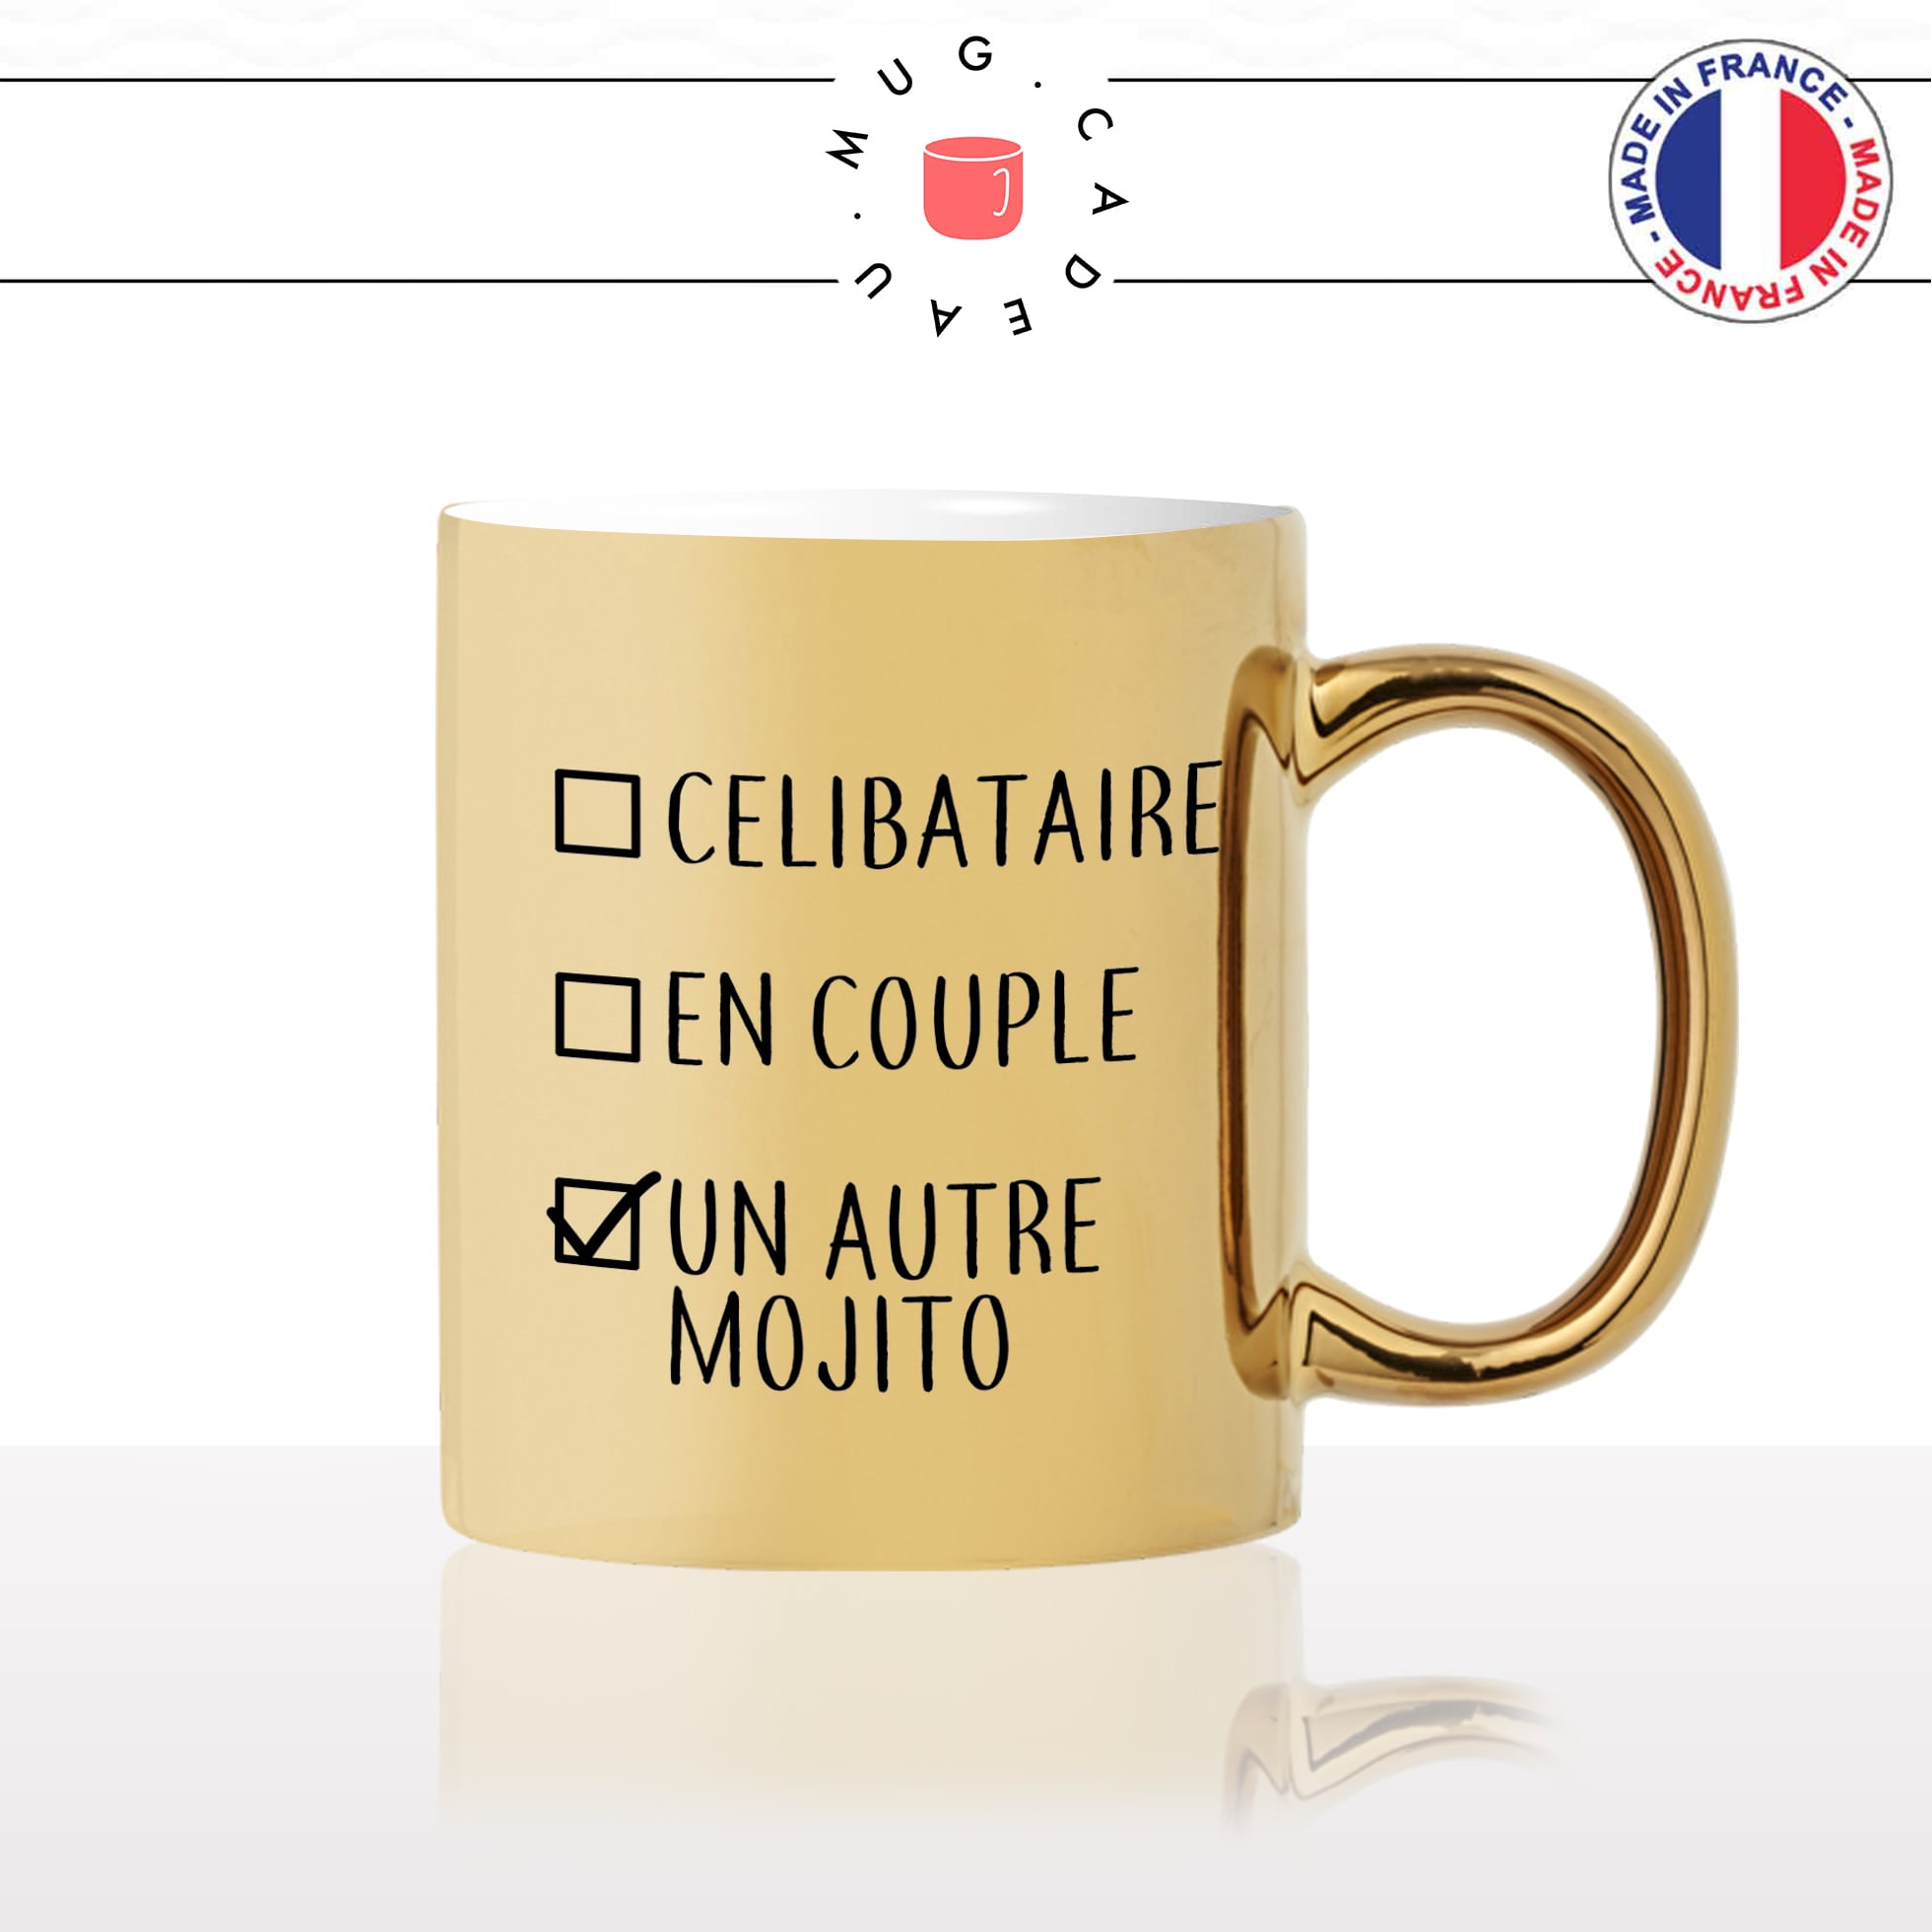 mug-tasse-doré-or-gold-célibataire-couple-mojito-apéro-soirée-copines-femme-filles-cool-humour-fun-idée-cadeau-personnalisé-café-thé2-min